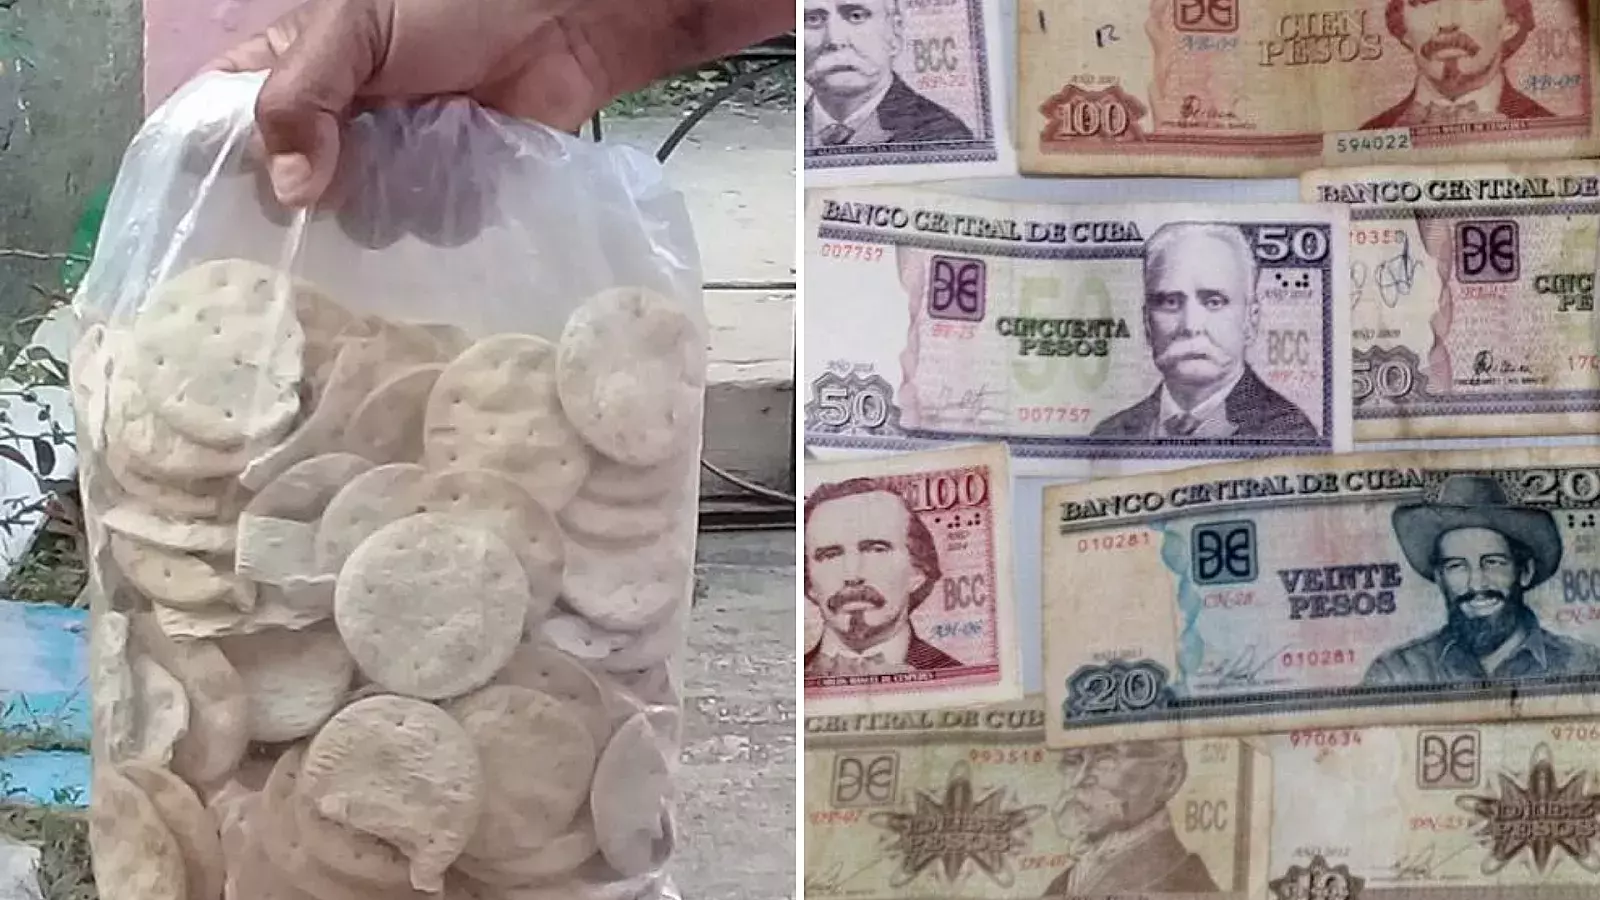 Aumenta el precio de las galletas "por el estado" en Cuba